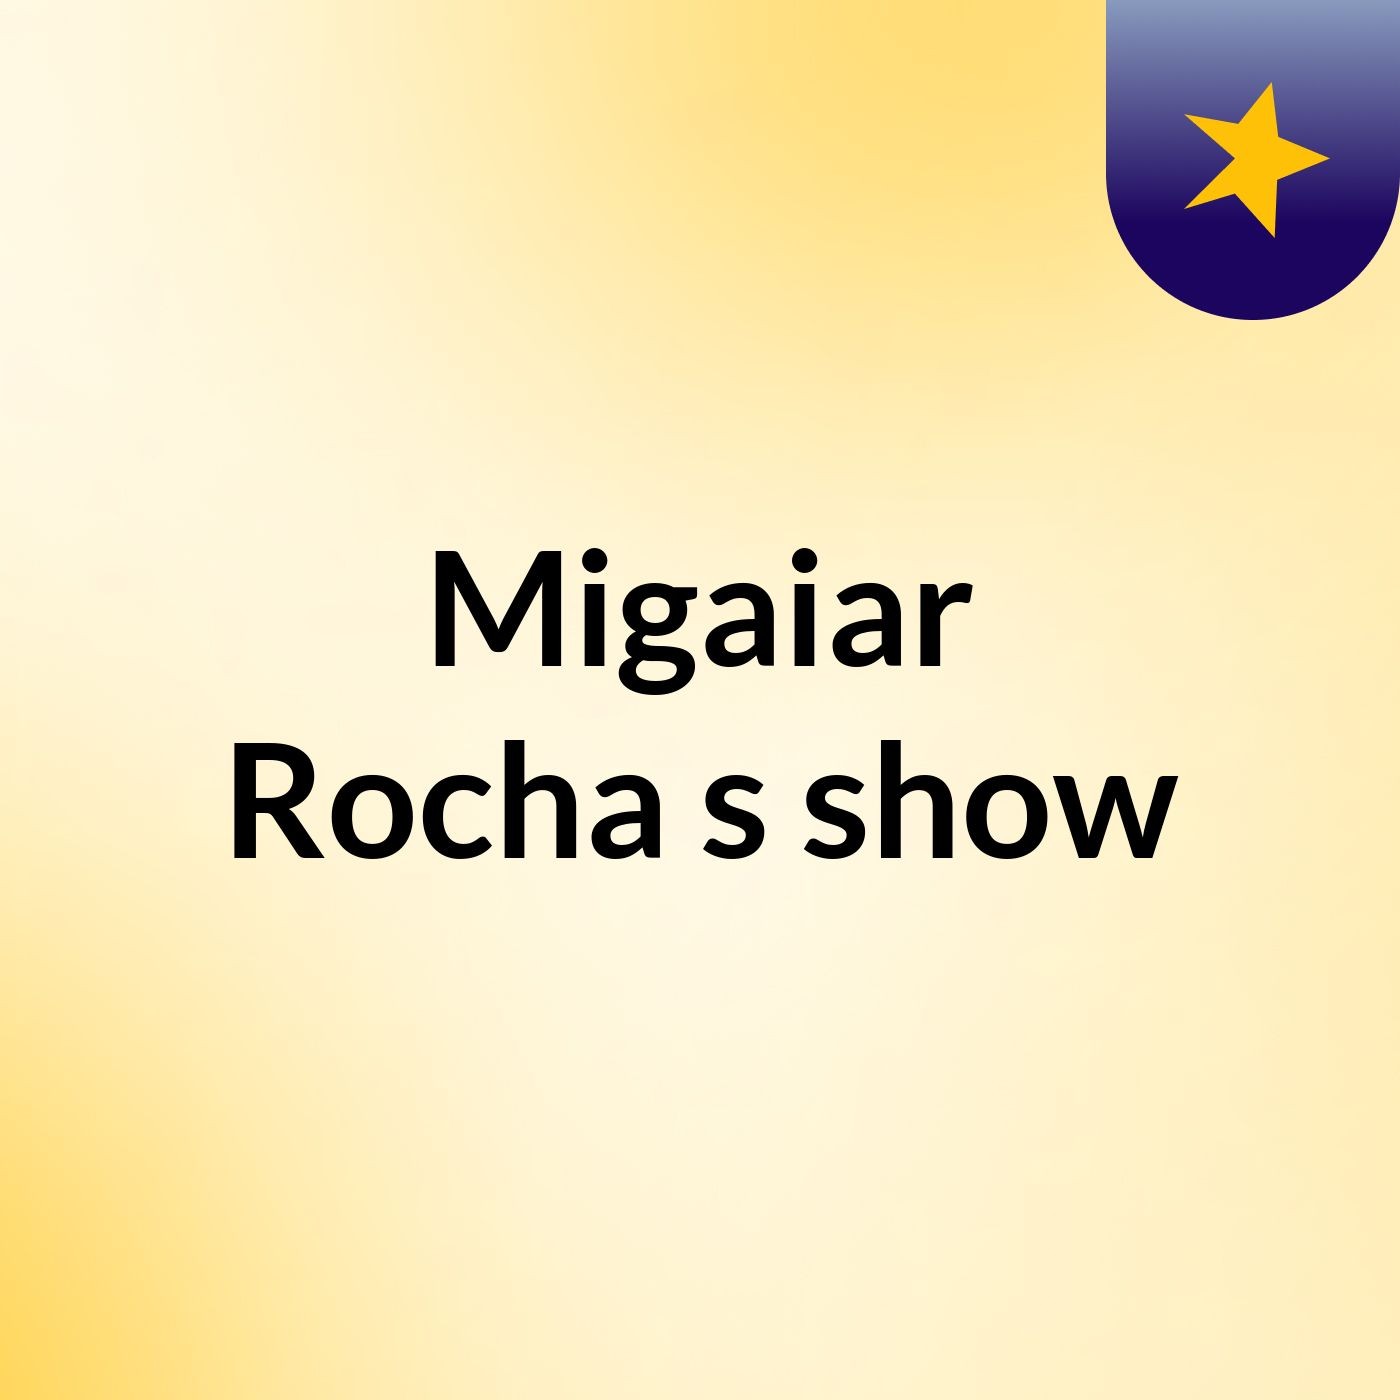 Migaiar Rocha's show